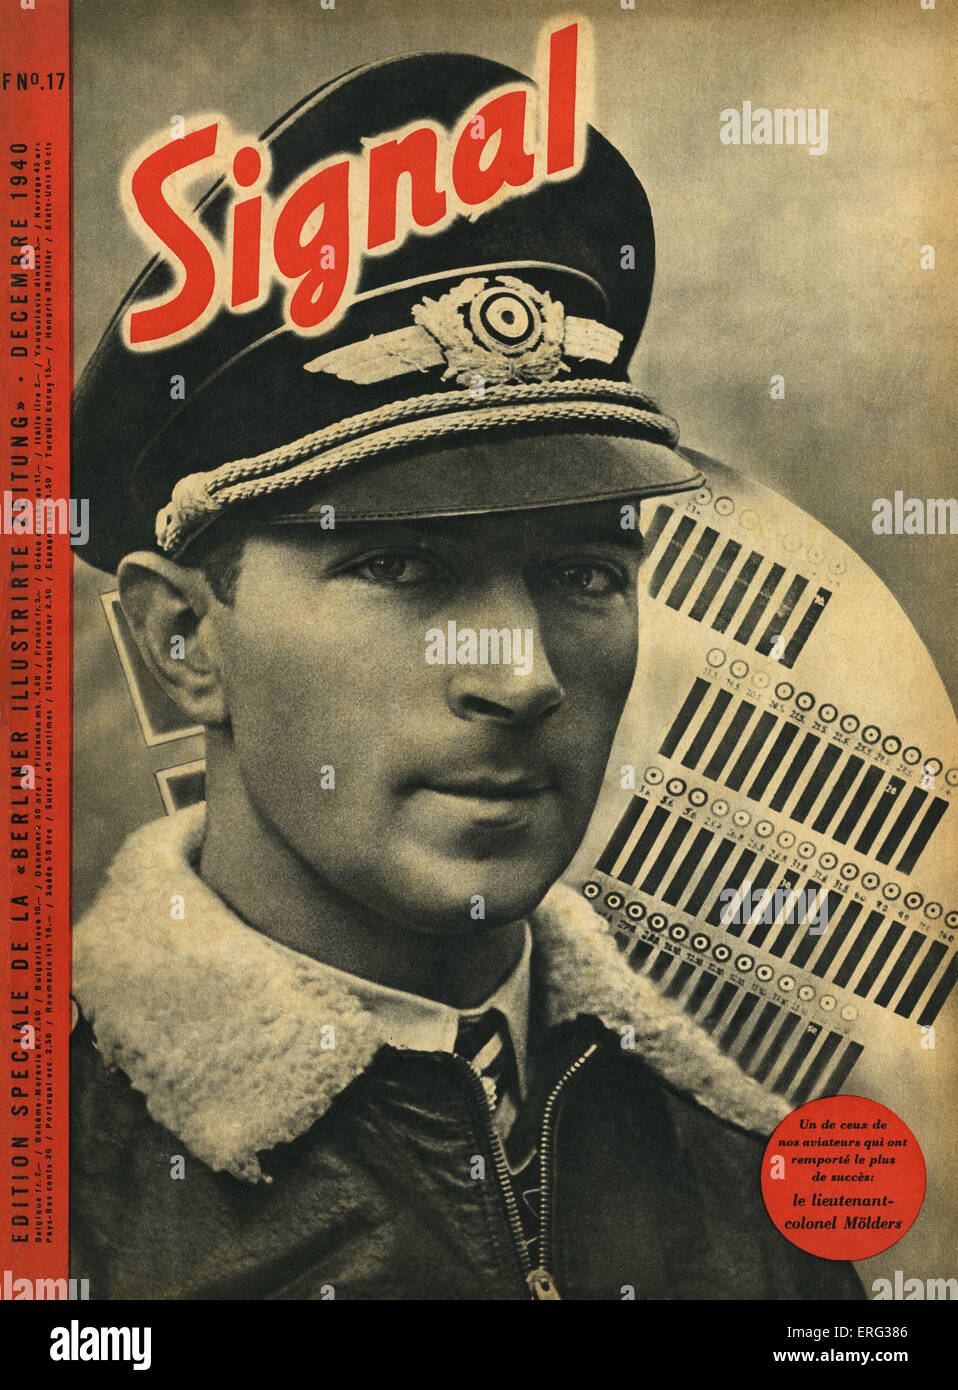 "Signal", eine spezielle französische Sprachversion von der "Berliner Illustrirte Zeitung", Dezember 1940.  Zu decken. UN de Ceux de Nos Stockfoto